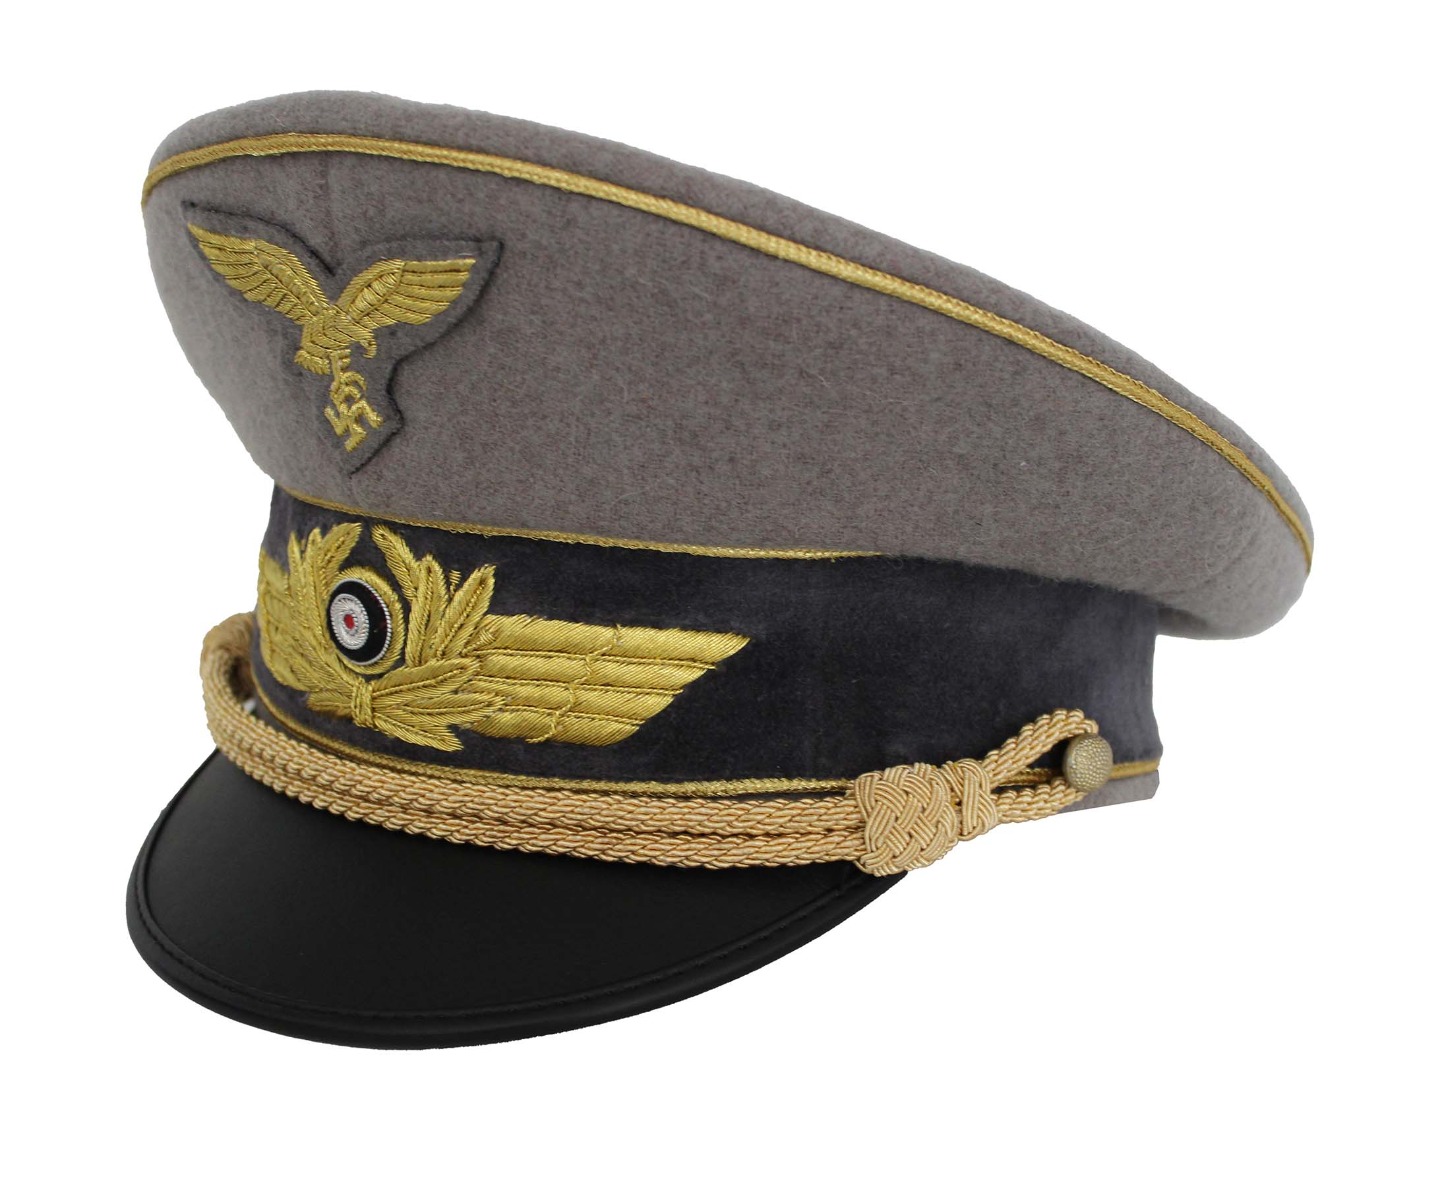 HERMANN GORING VISOR CAP 